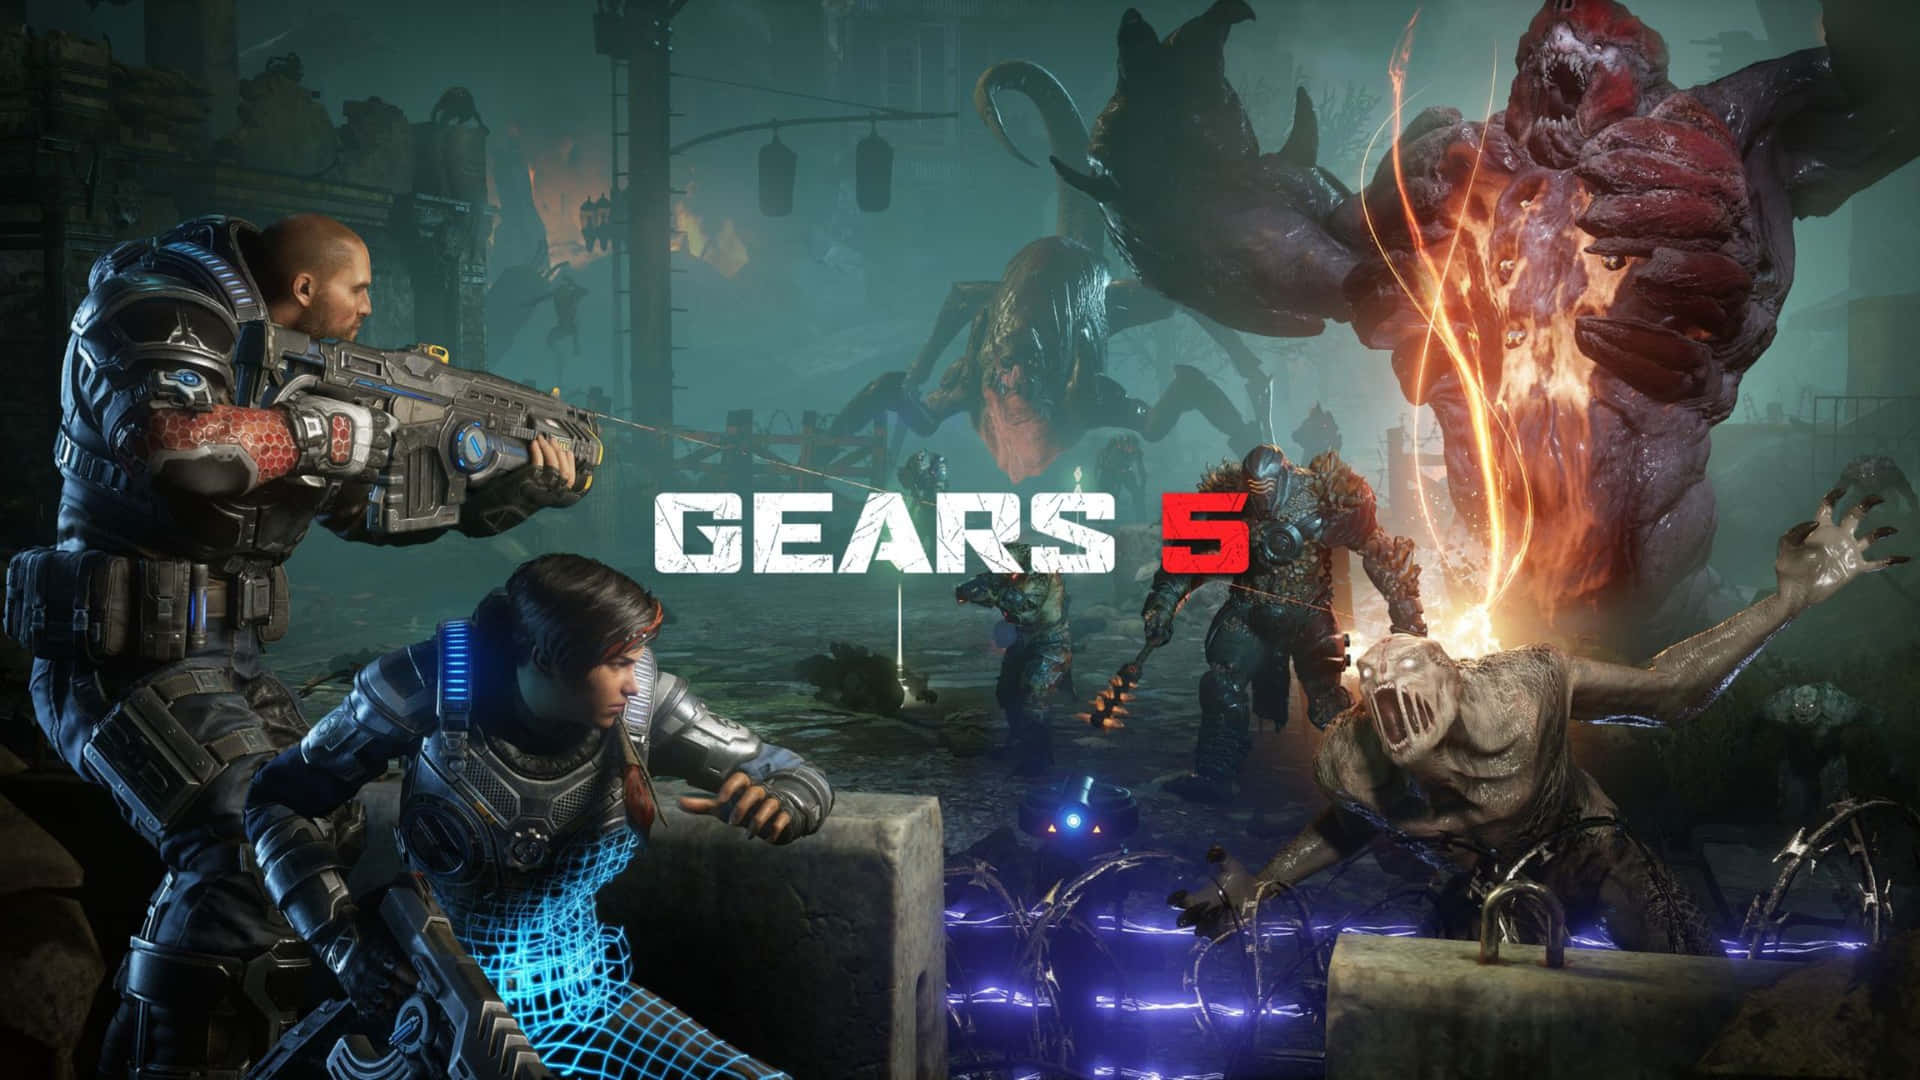 Get ready to battle in Gears Of War 5!